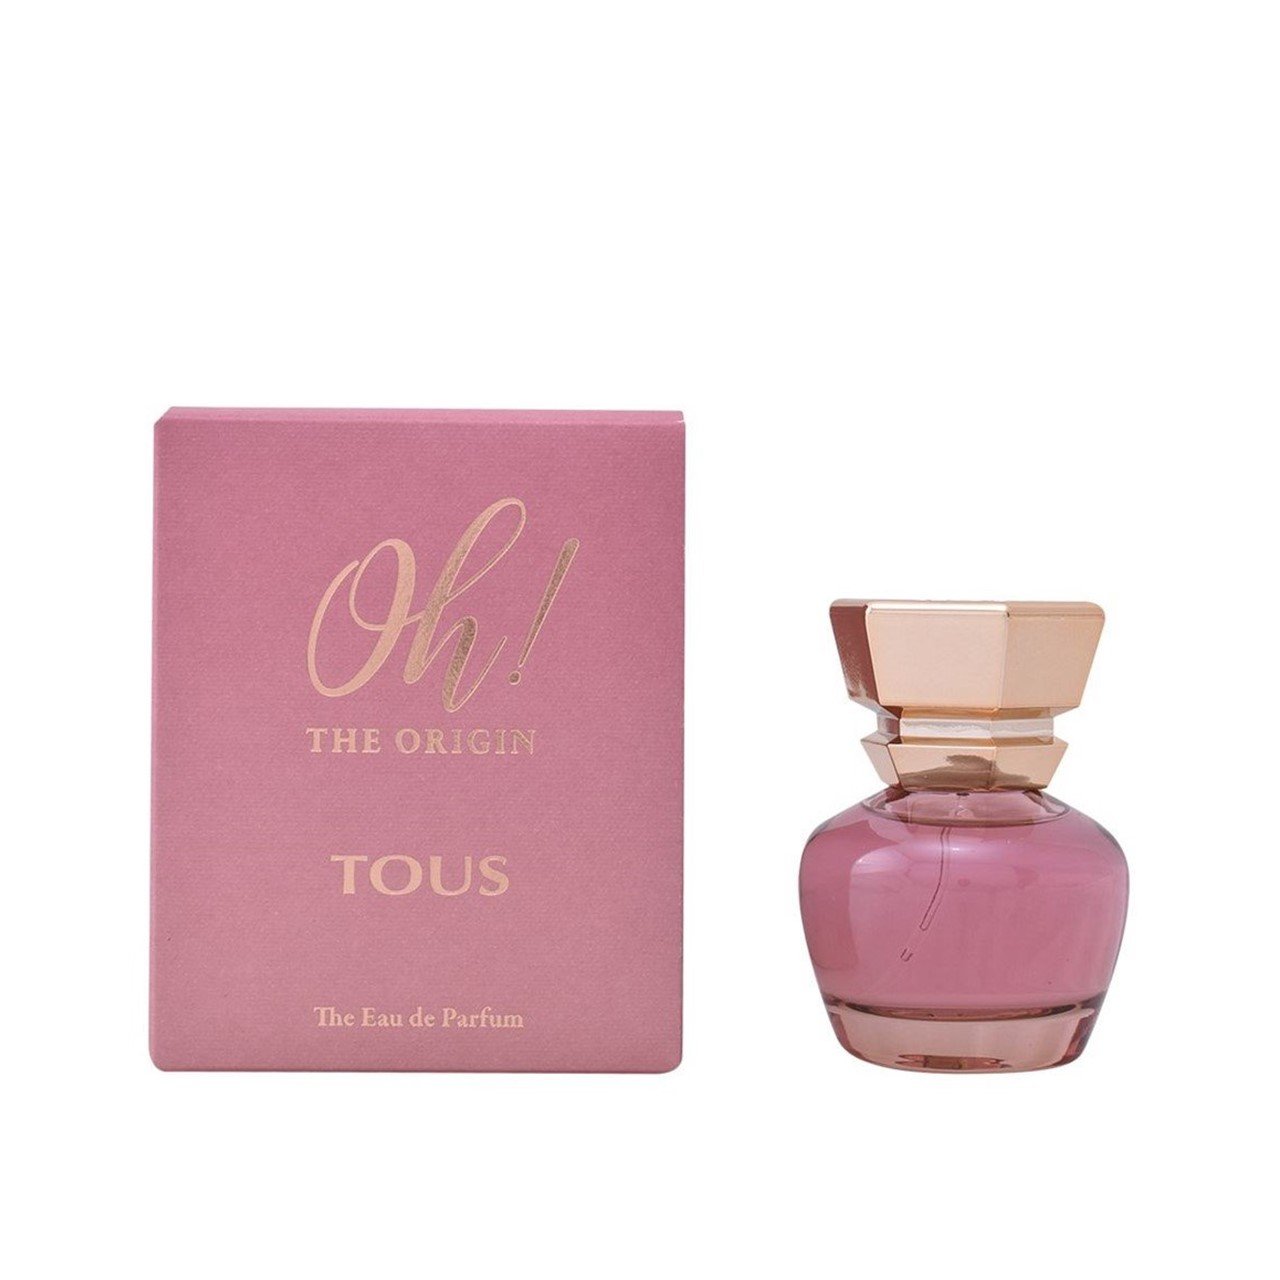 Buy Tous Oh! The Origin Eau de Parfum · Serbia